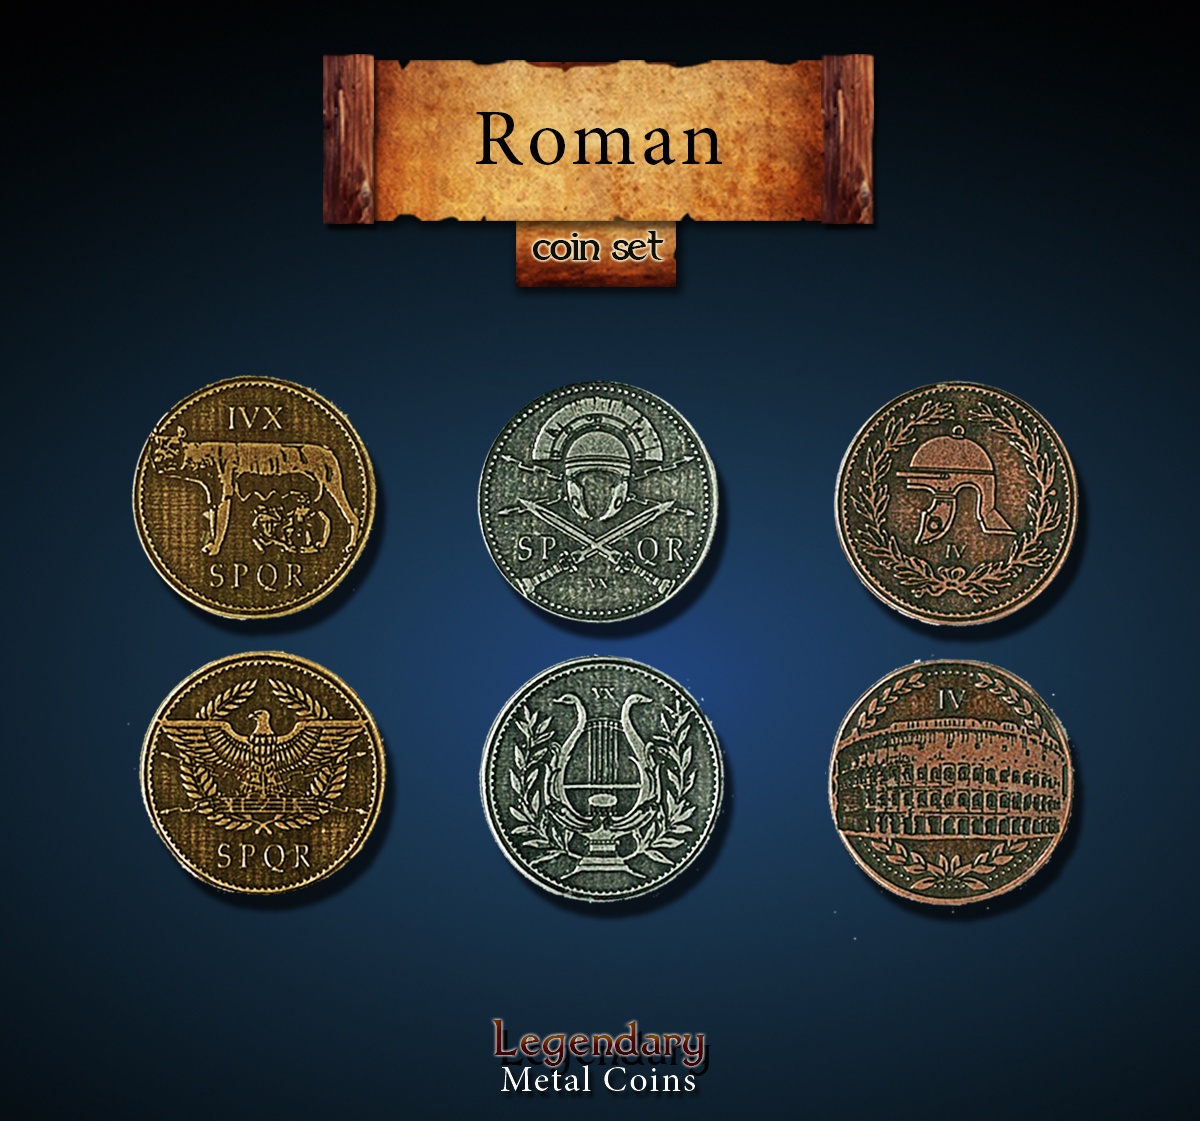 Roman Coin Set Legendary Metal Coins